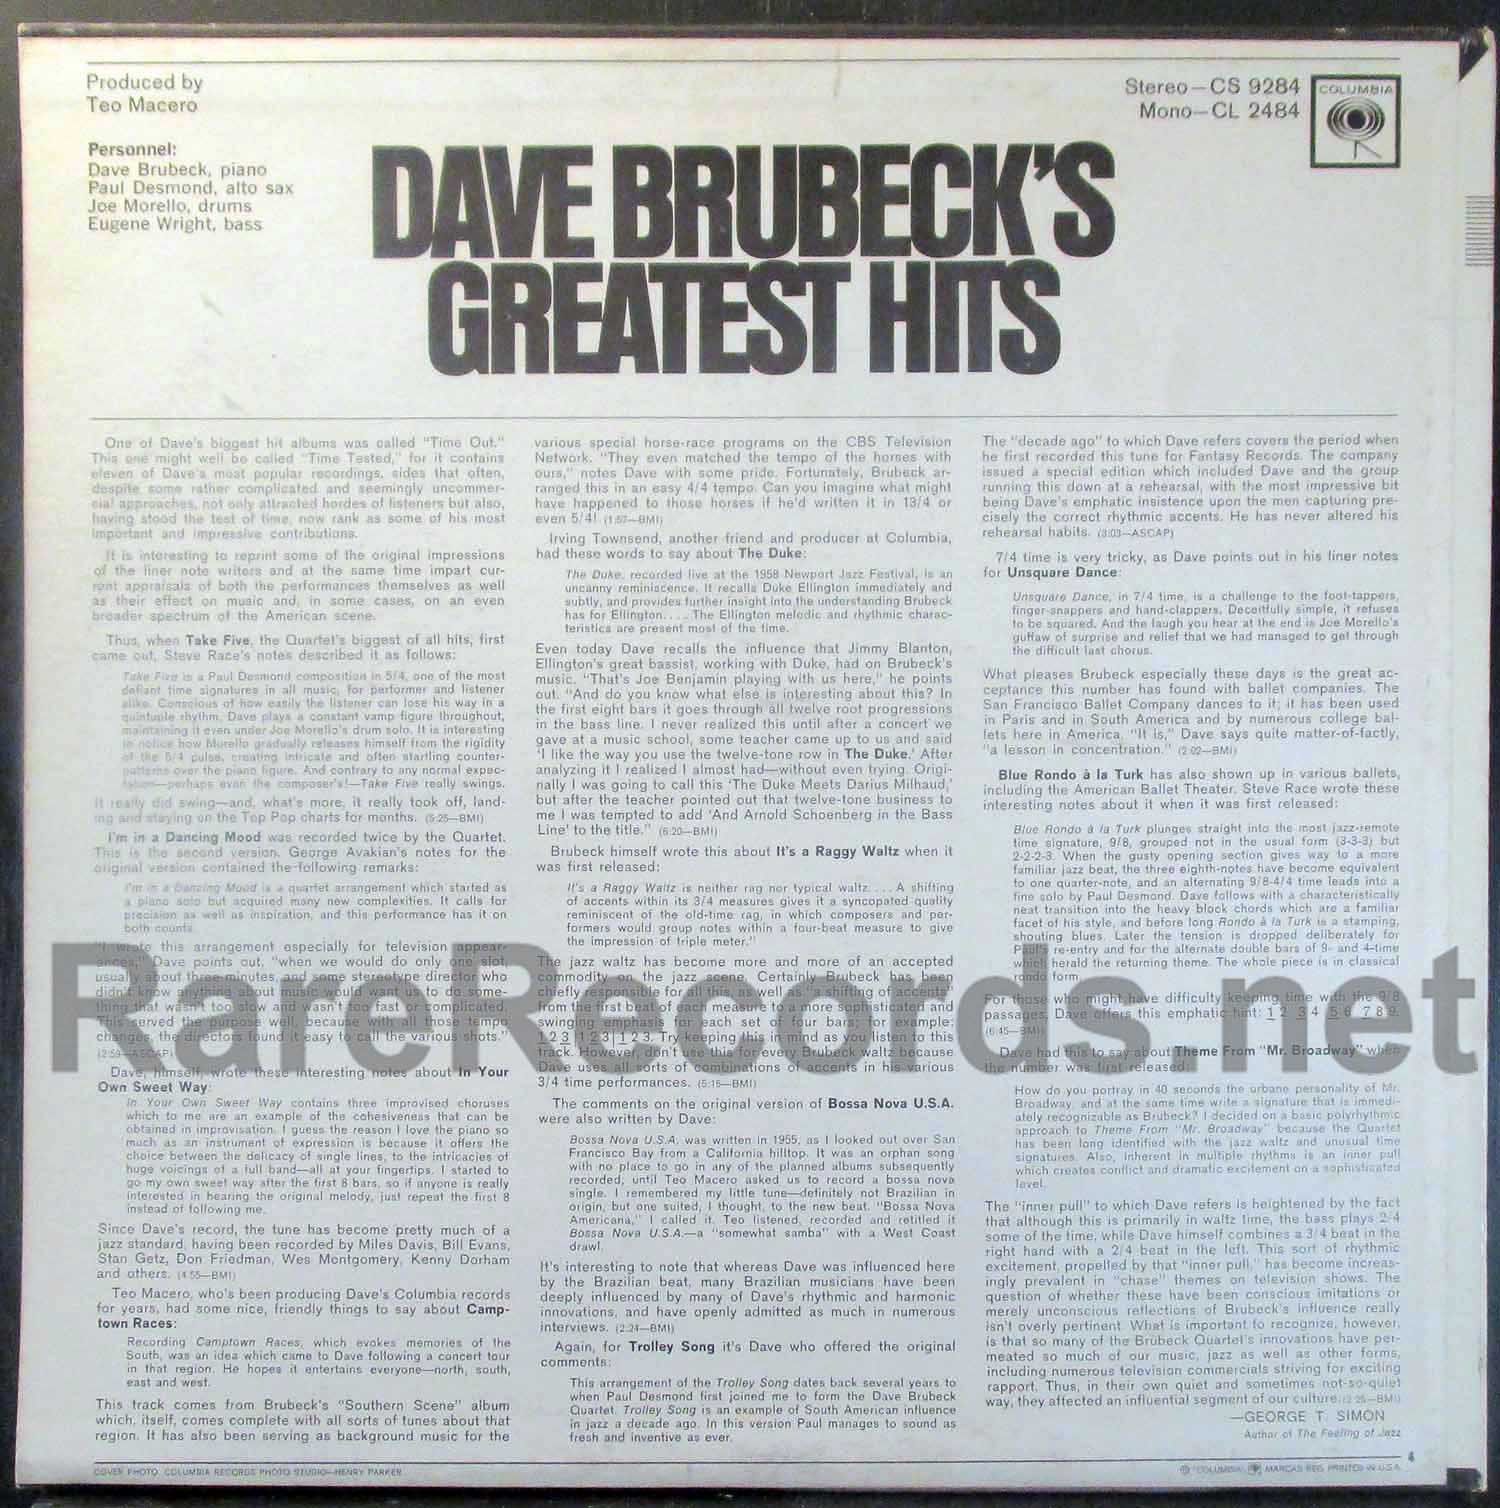 Let Mistillid Shah Dave Brubeck – Greatest Hits sealed original U.S. mono LP